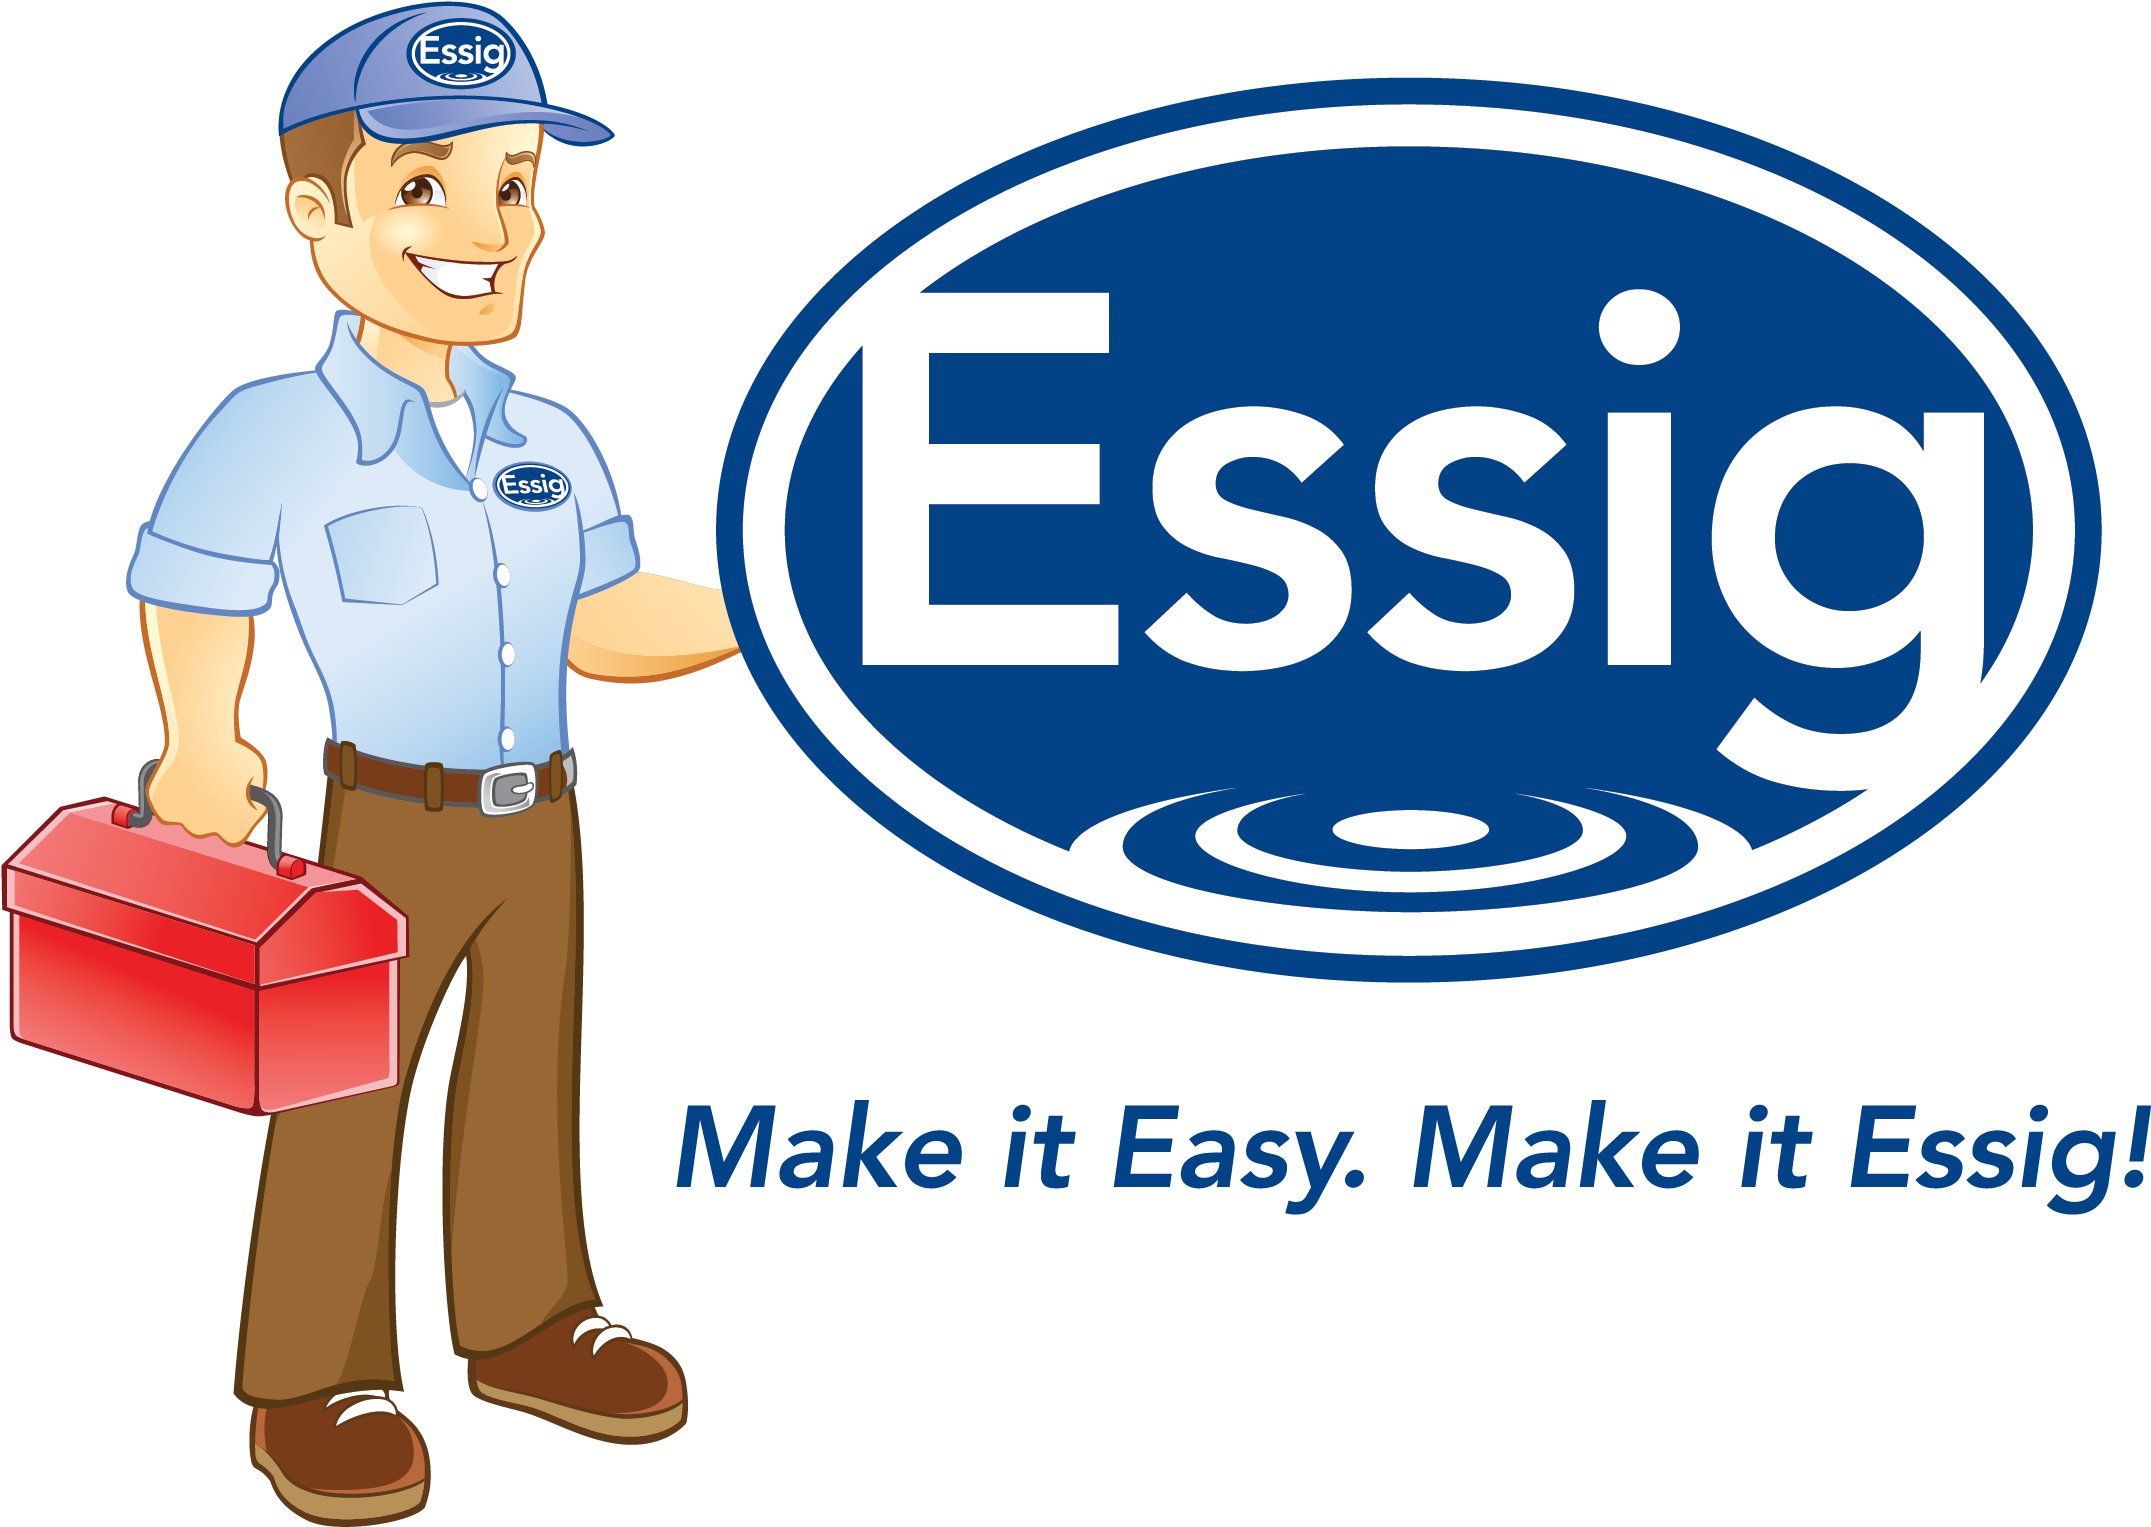 Essig, Inc - Essig Plumbing Pw Essig (2317x1561)